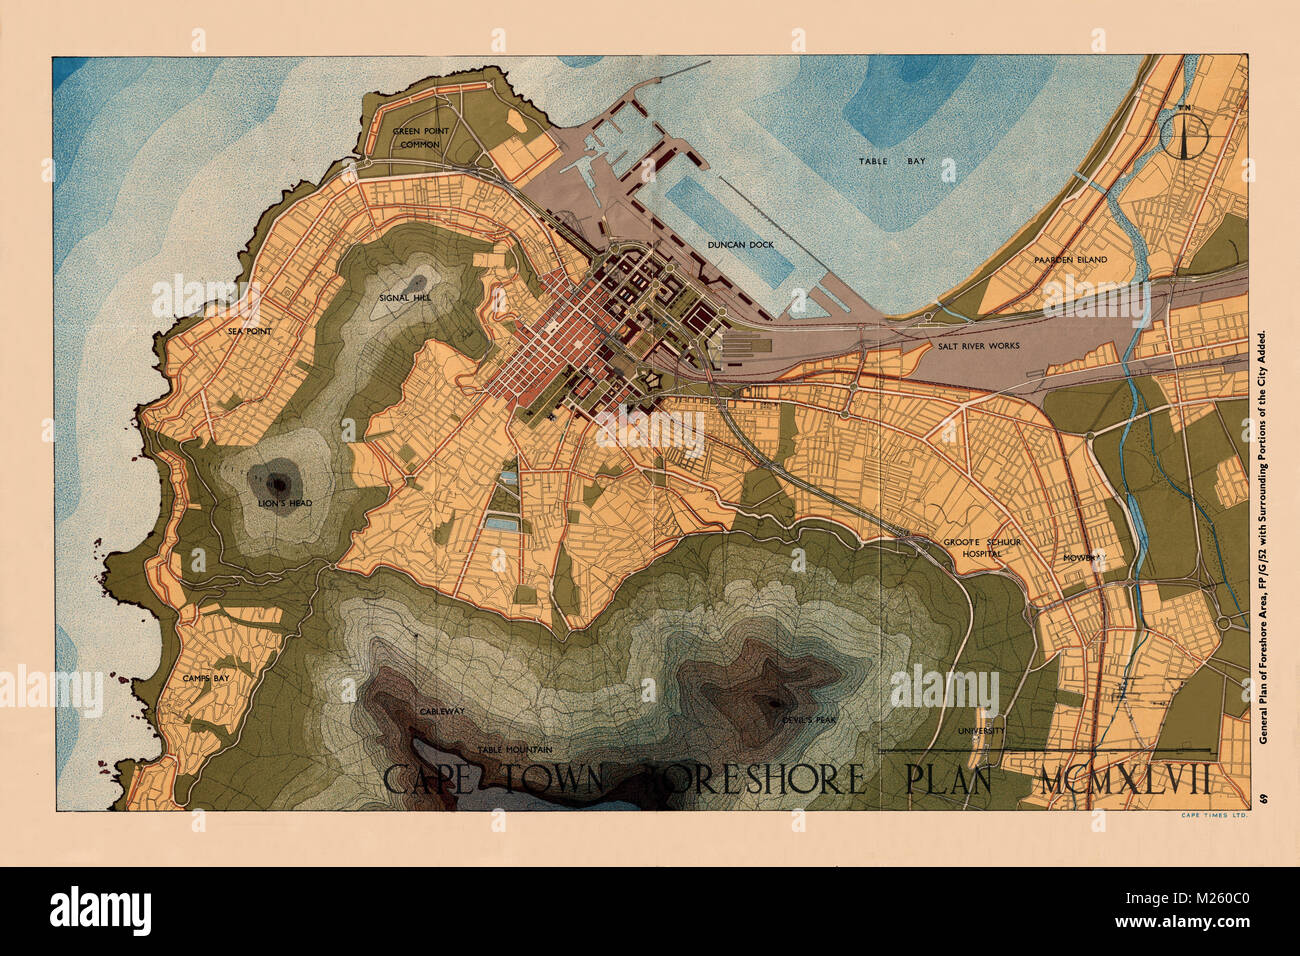 Mappa storica della Città del Capo, Sud Africa circa 1947. Foto Stock